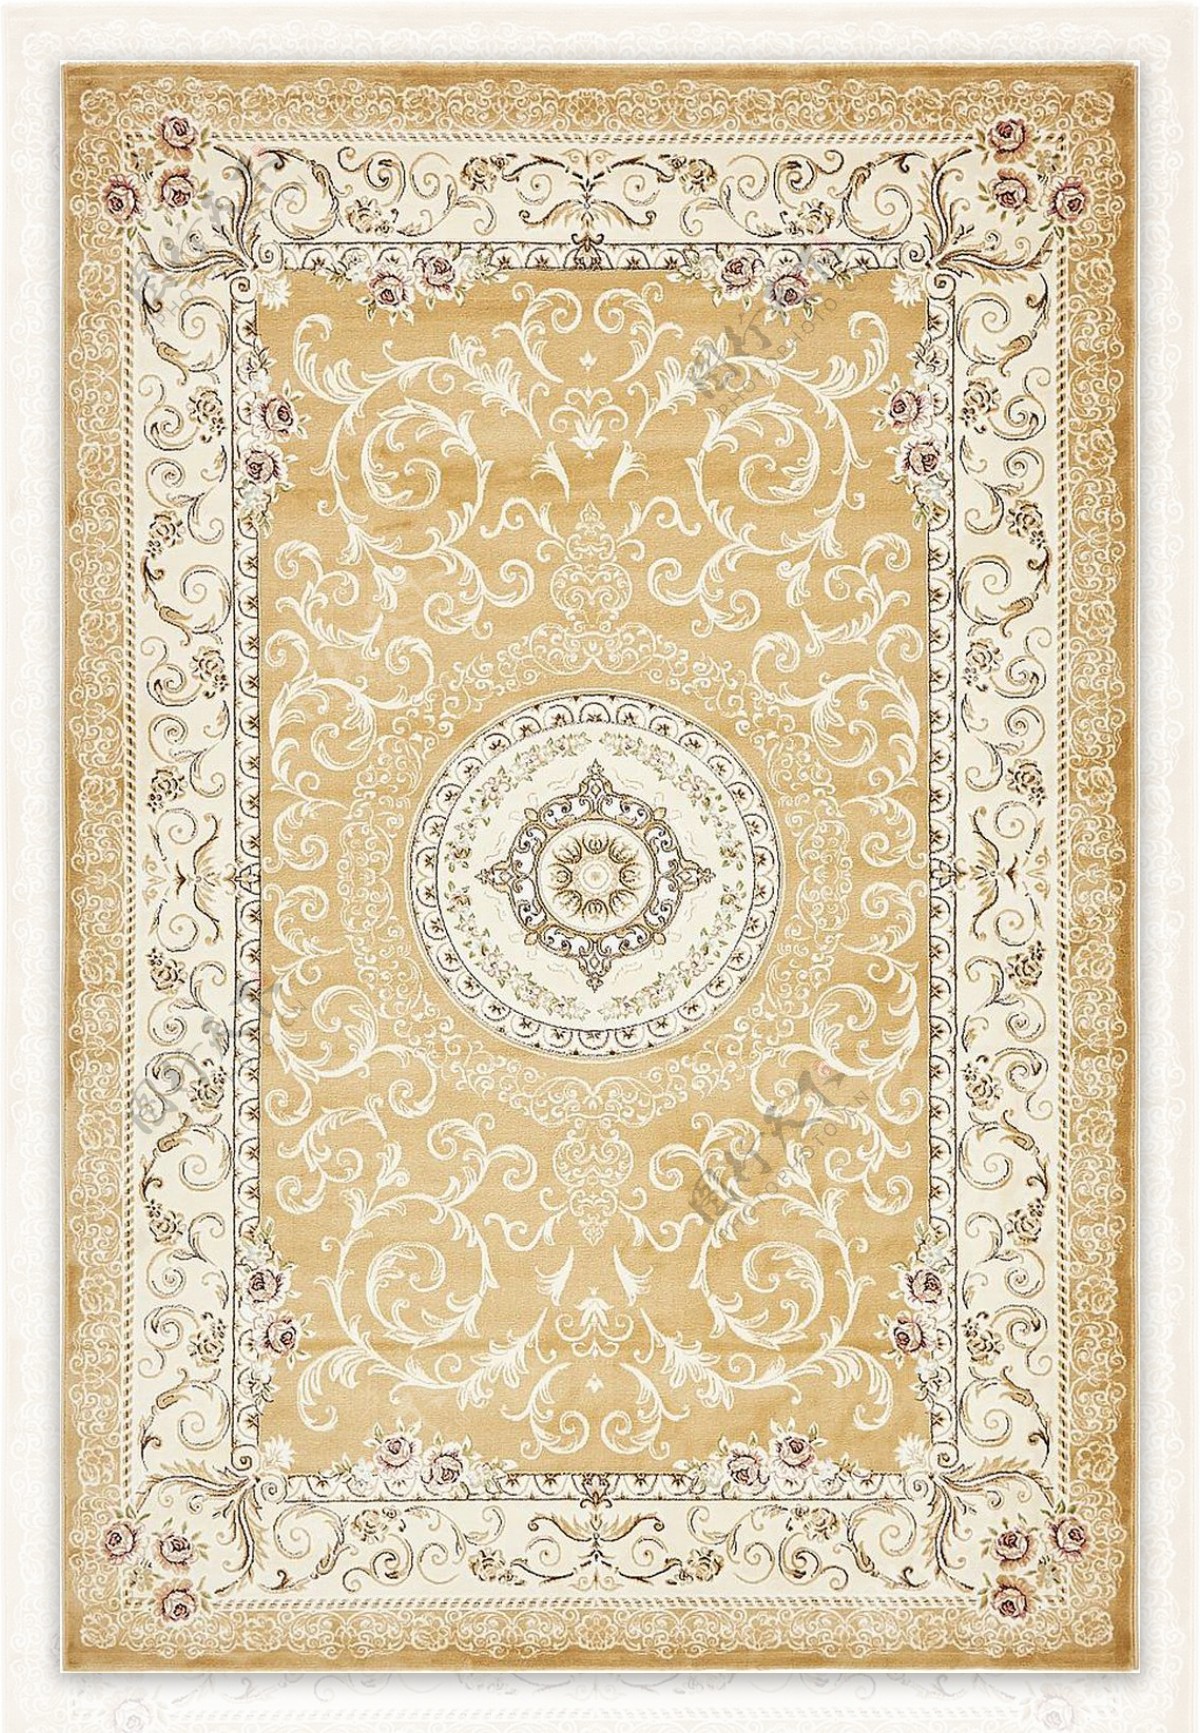 古典经典地毯纹理材质贴图